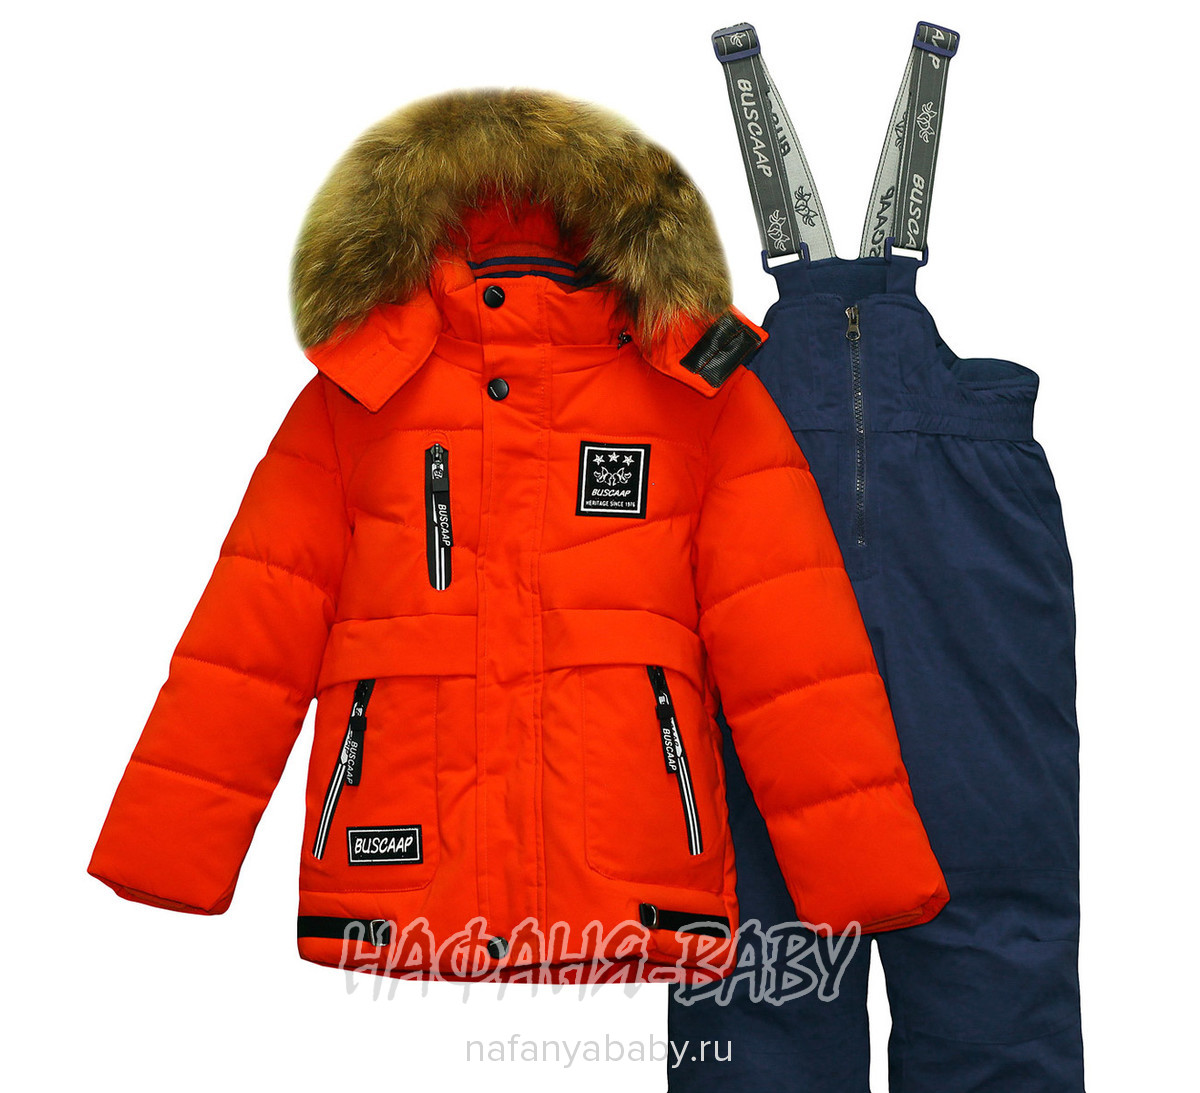 Зимний костюм (куртка+подстежка+полукомбинезон) BUSCAAP арт: 518, 1-4 года, 5-9 лет, оптом Китай (Пекин)